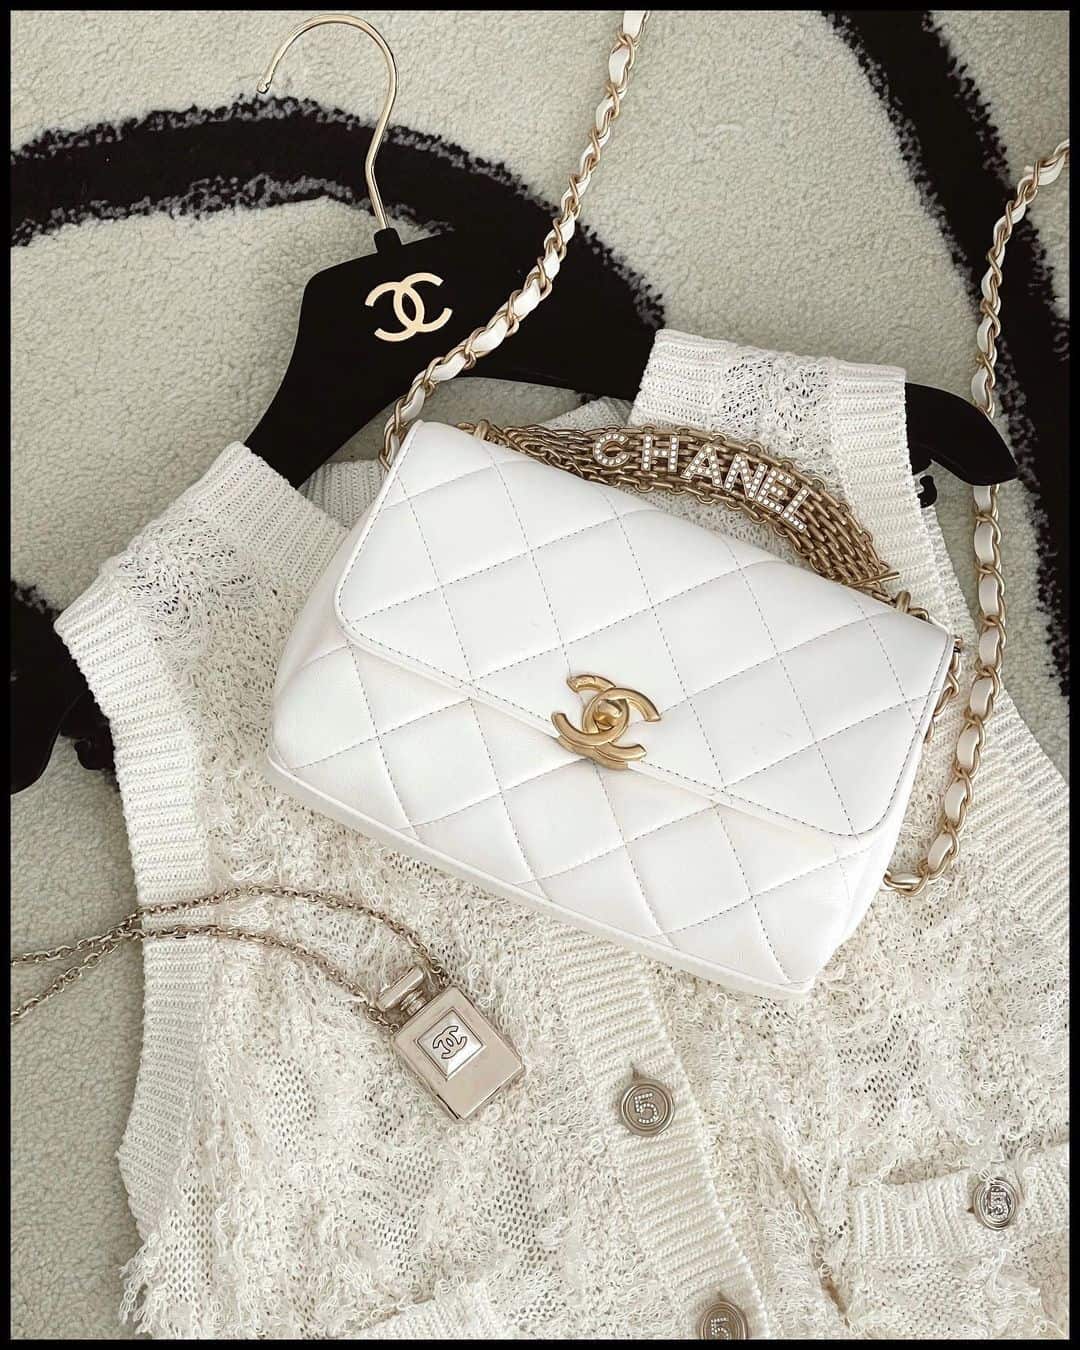 Chanel Bag Prices Euro  Bragmybag